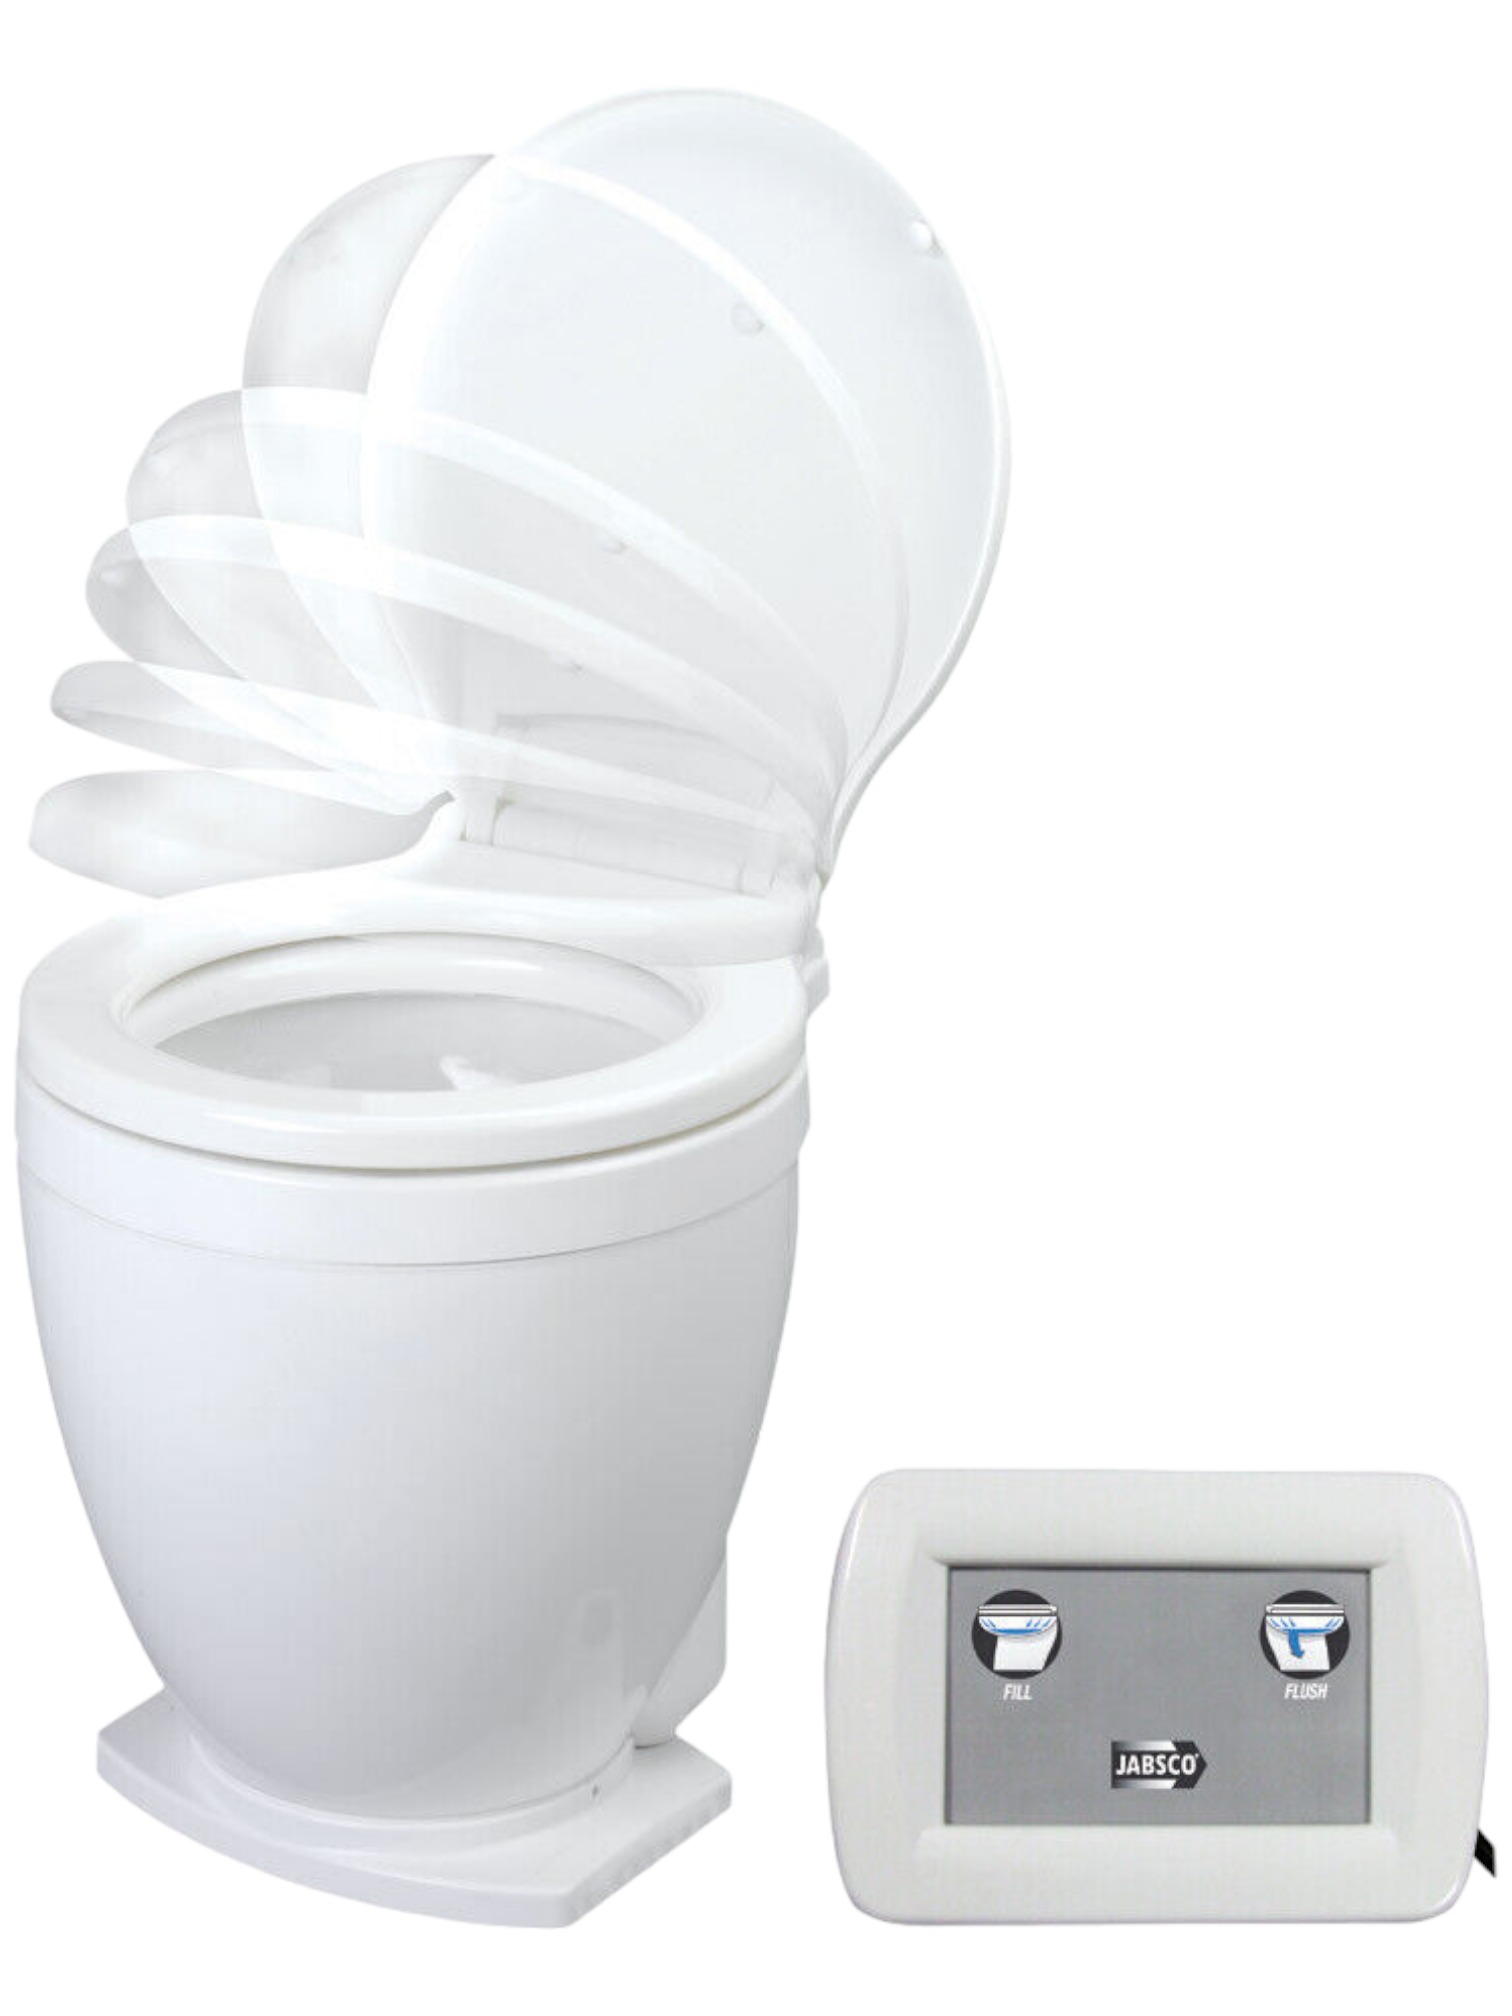 Jabsco-Toilette Lite Flush mit Wandschalter